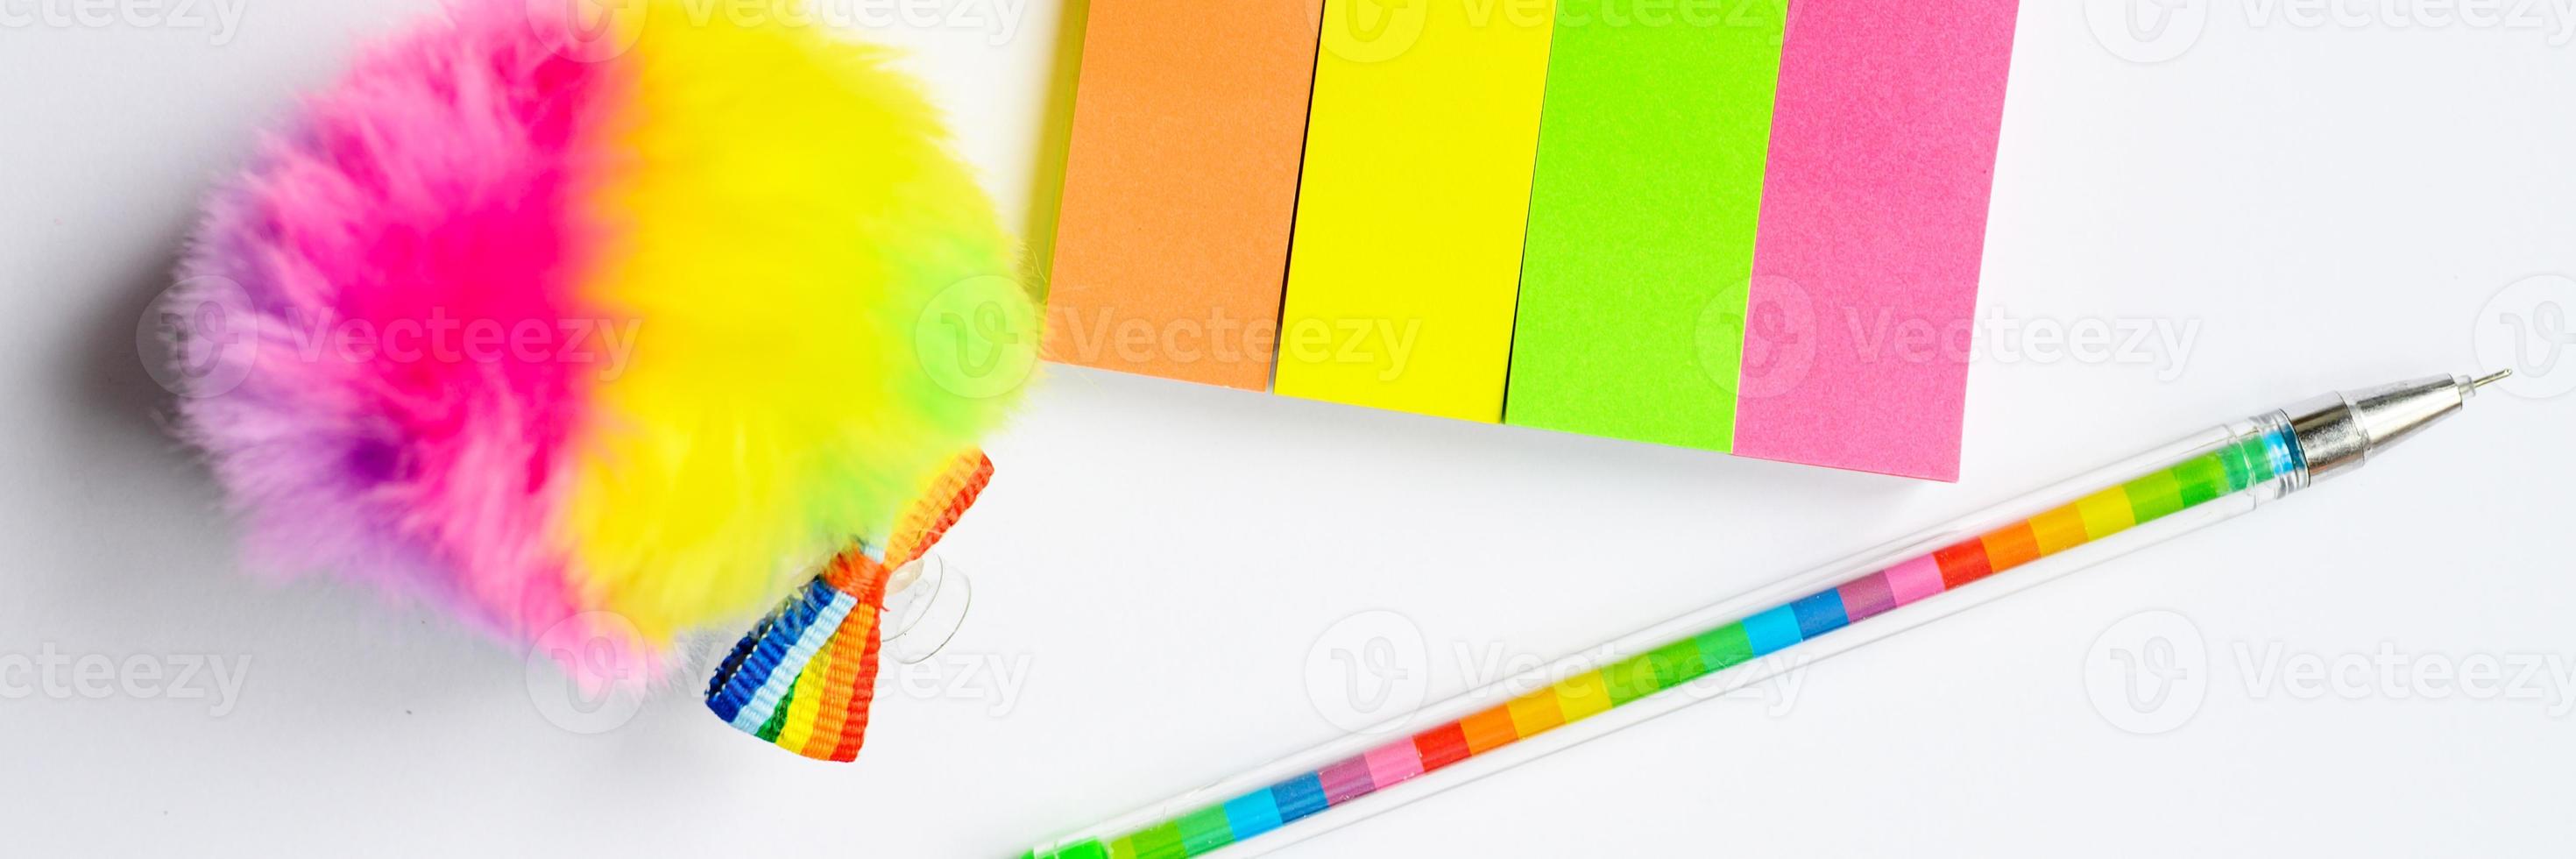 mehrfarbige Aufkleber und ein Stift auf weißem Hintergrund foto